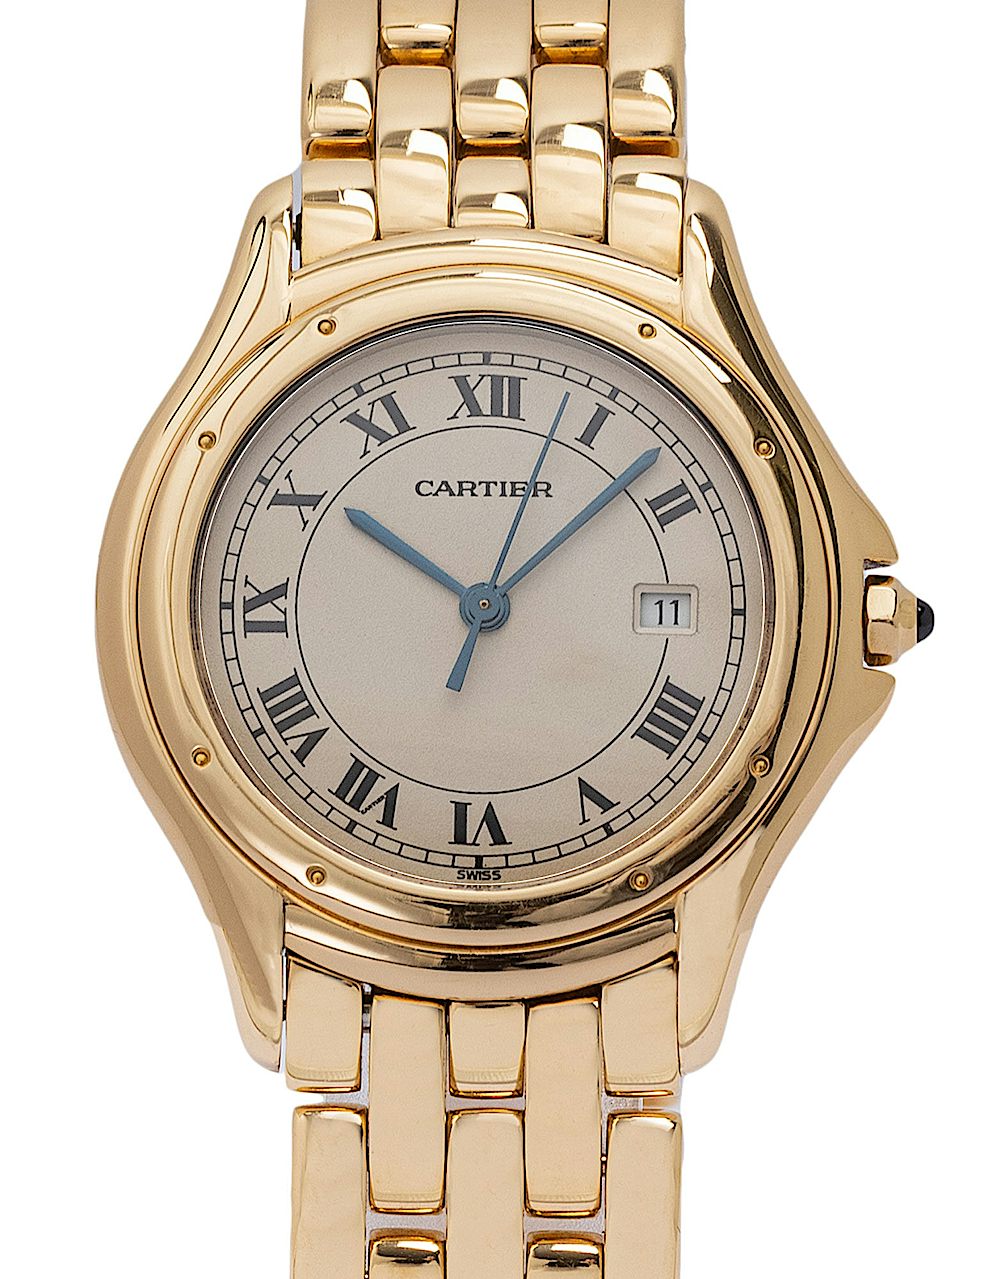 Cartier Cougar